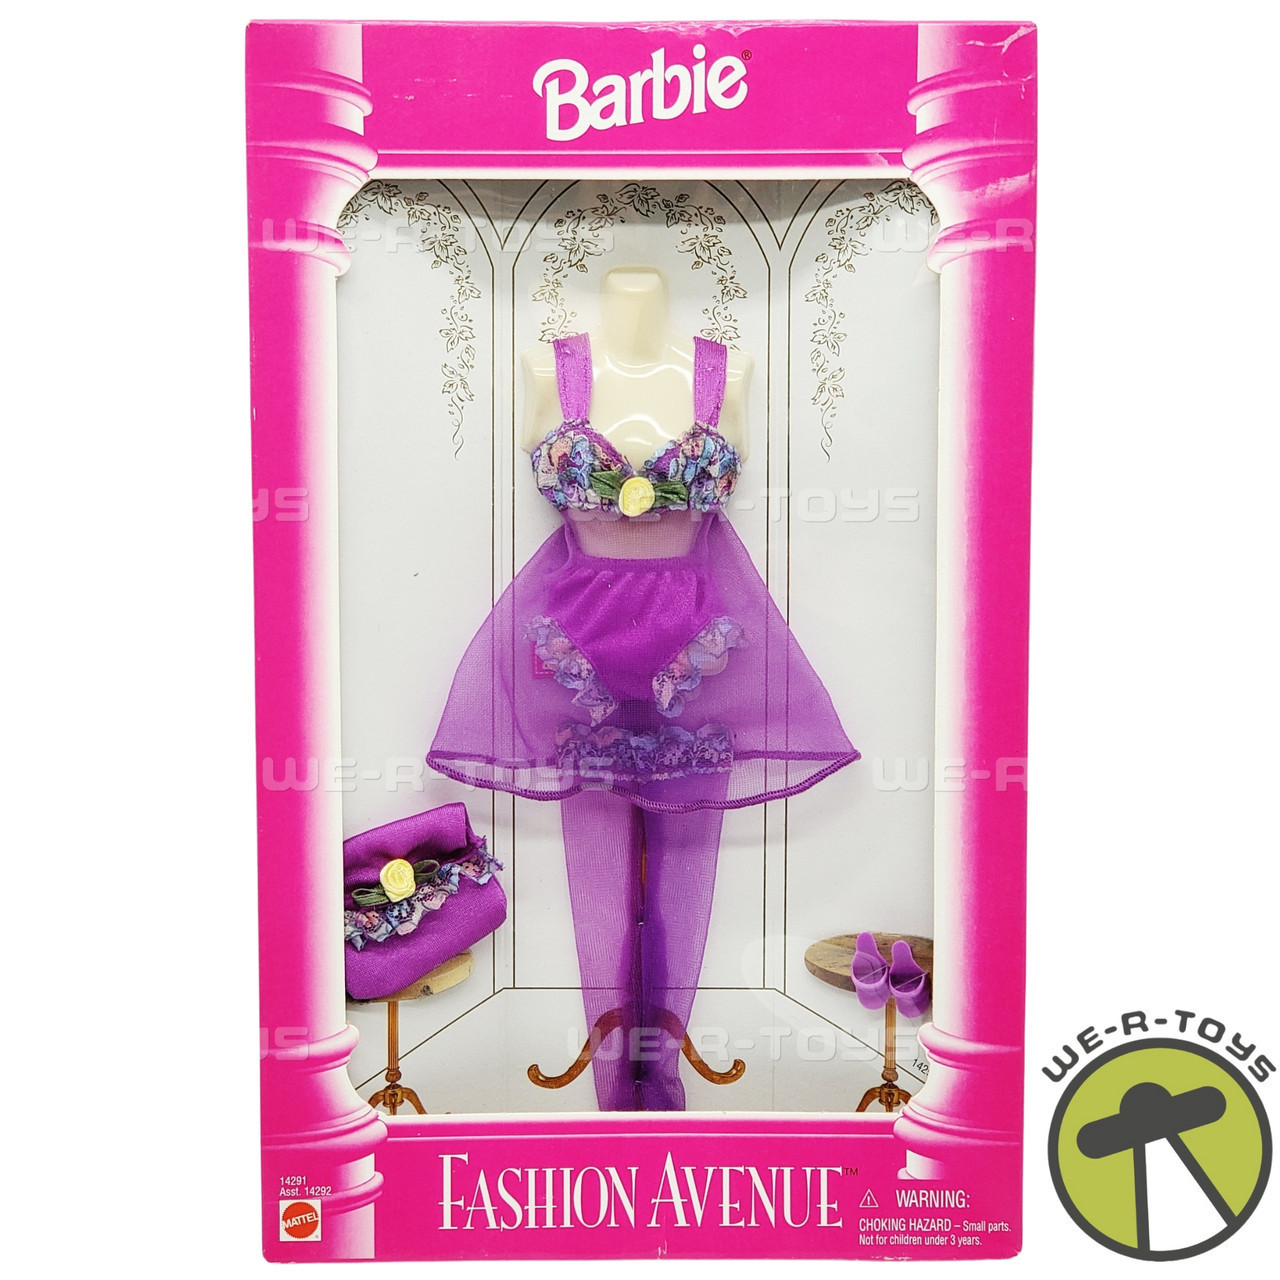 Barbie Fashion Avenue Purple Lingerie Fashion 1995 Mattel No. 14291 NRFB -  We-R-Toys